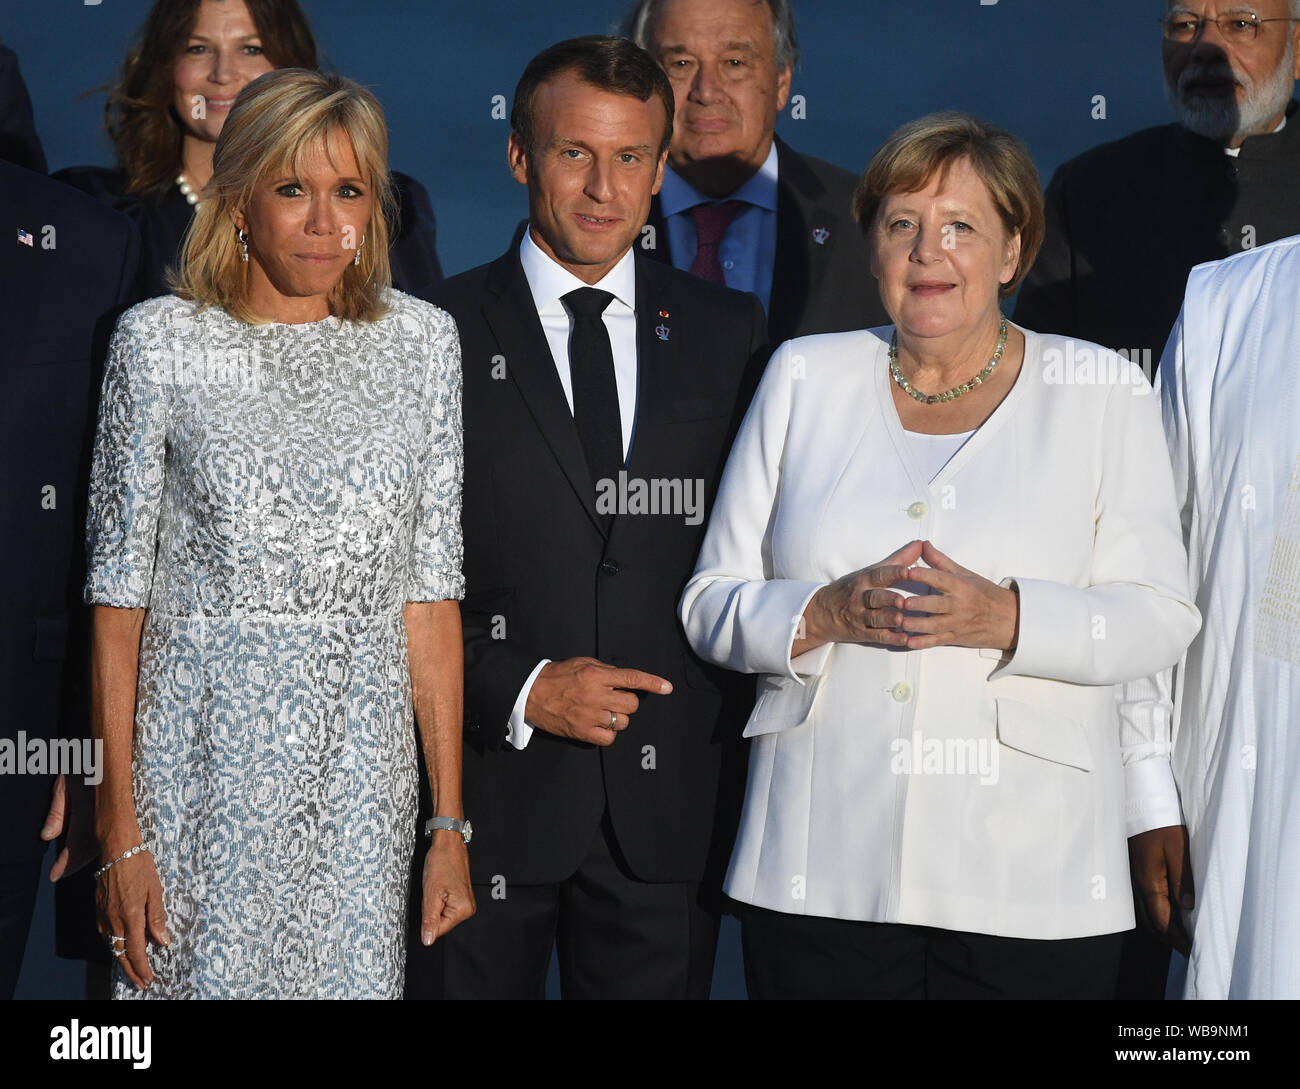 Brigitte Macron, Emmanuel Macron, le président français et la Chancelière allemande, Angela Merkel, inscrivez-vous d'autres dirigeants du monde pour la photo de famille au sommet du G7 à Biarritz, France. Banque D'Images